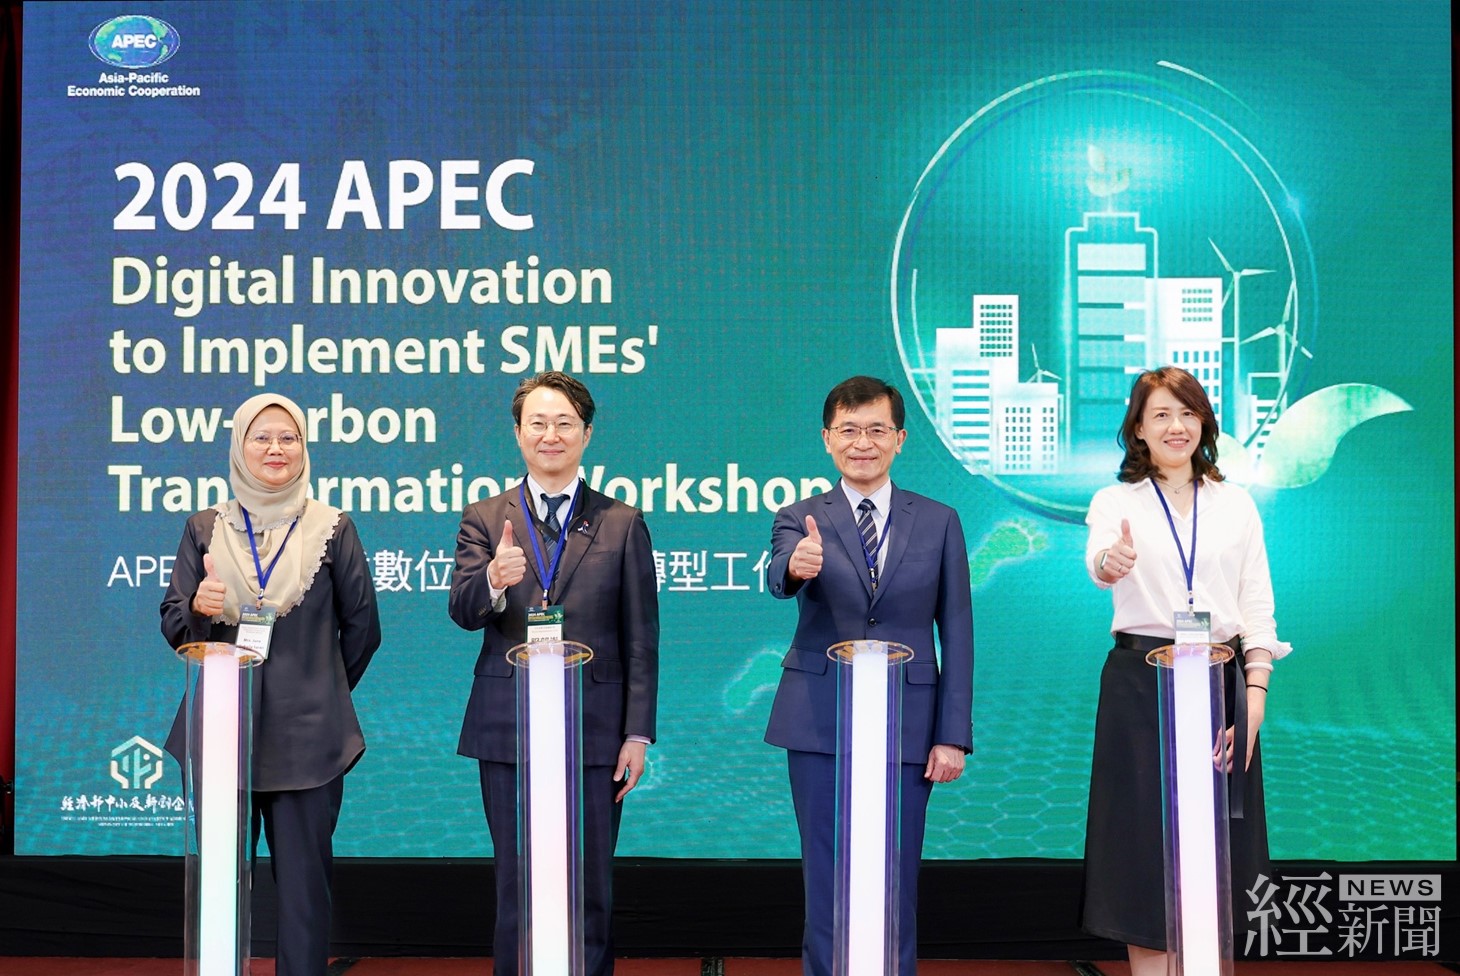 經濟部舉辦APEC中小企業工作坊 透過數位創新促進中小企業低碳轉型